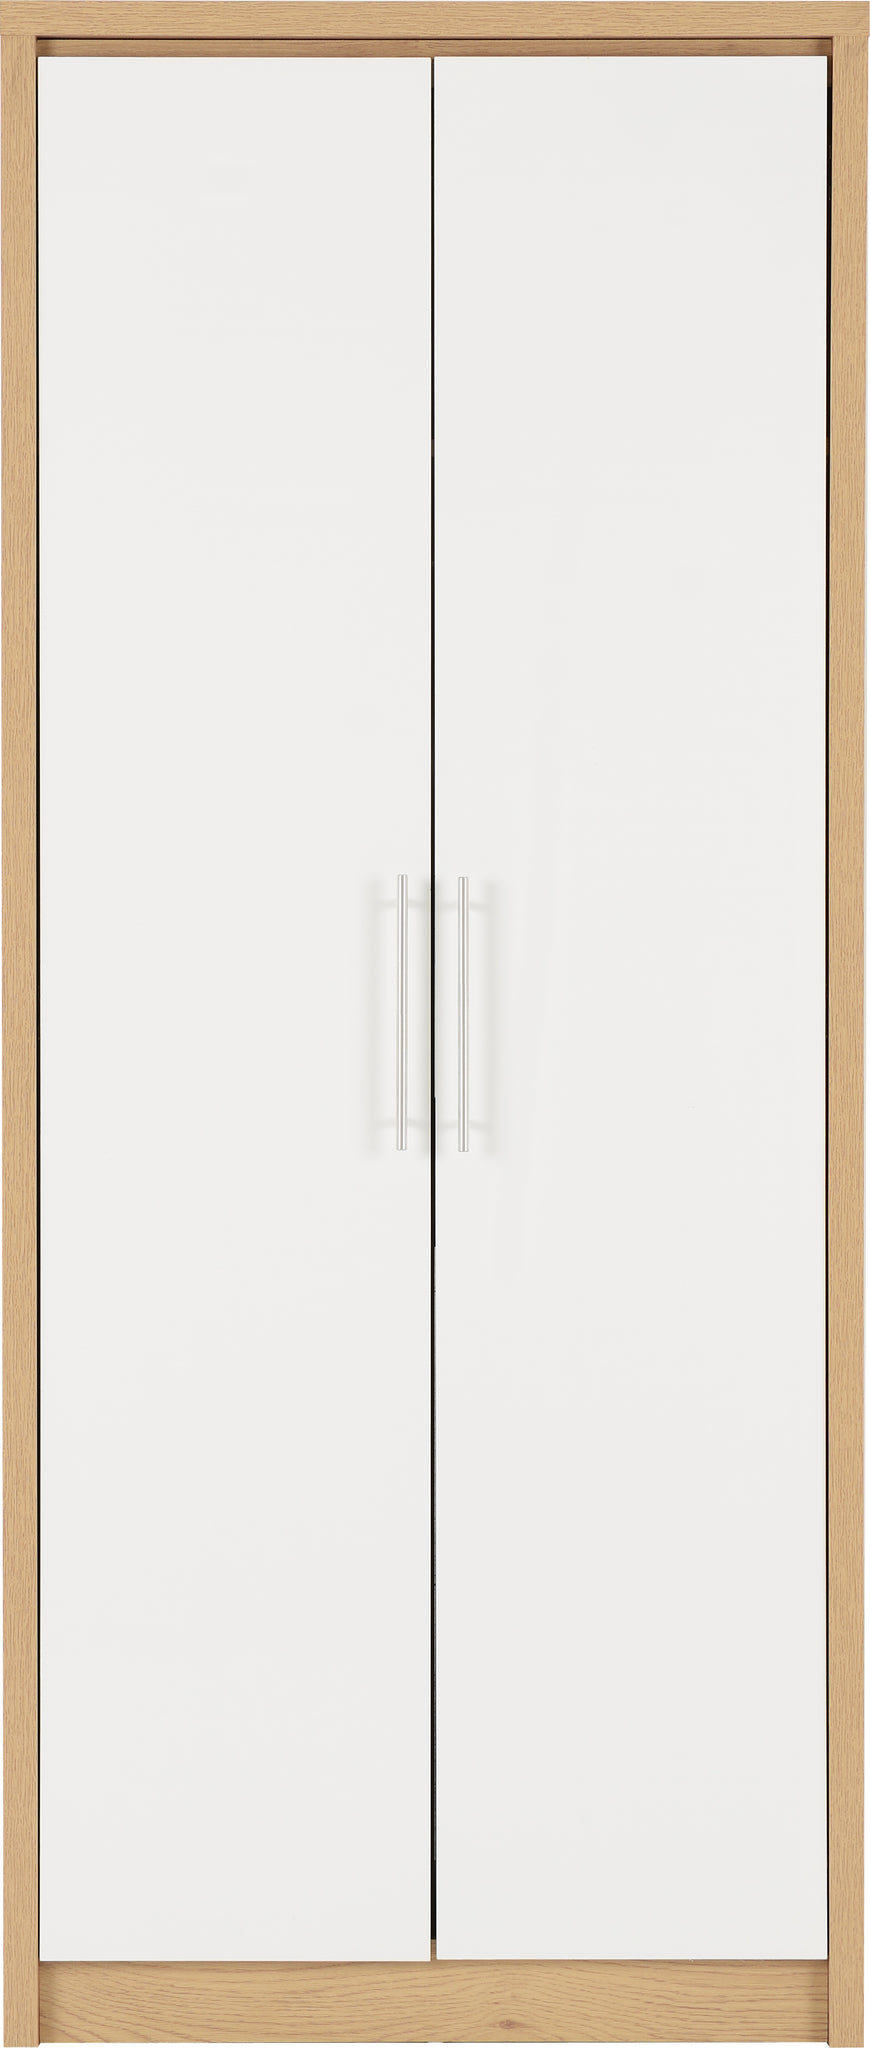 Seville 2 Door Wardrobe - White High Gloss/Light Oak Effect Veneer